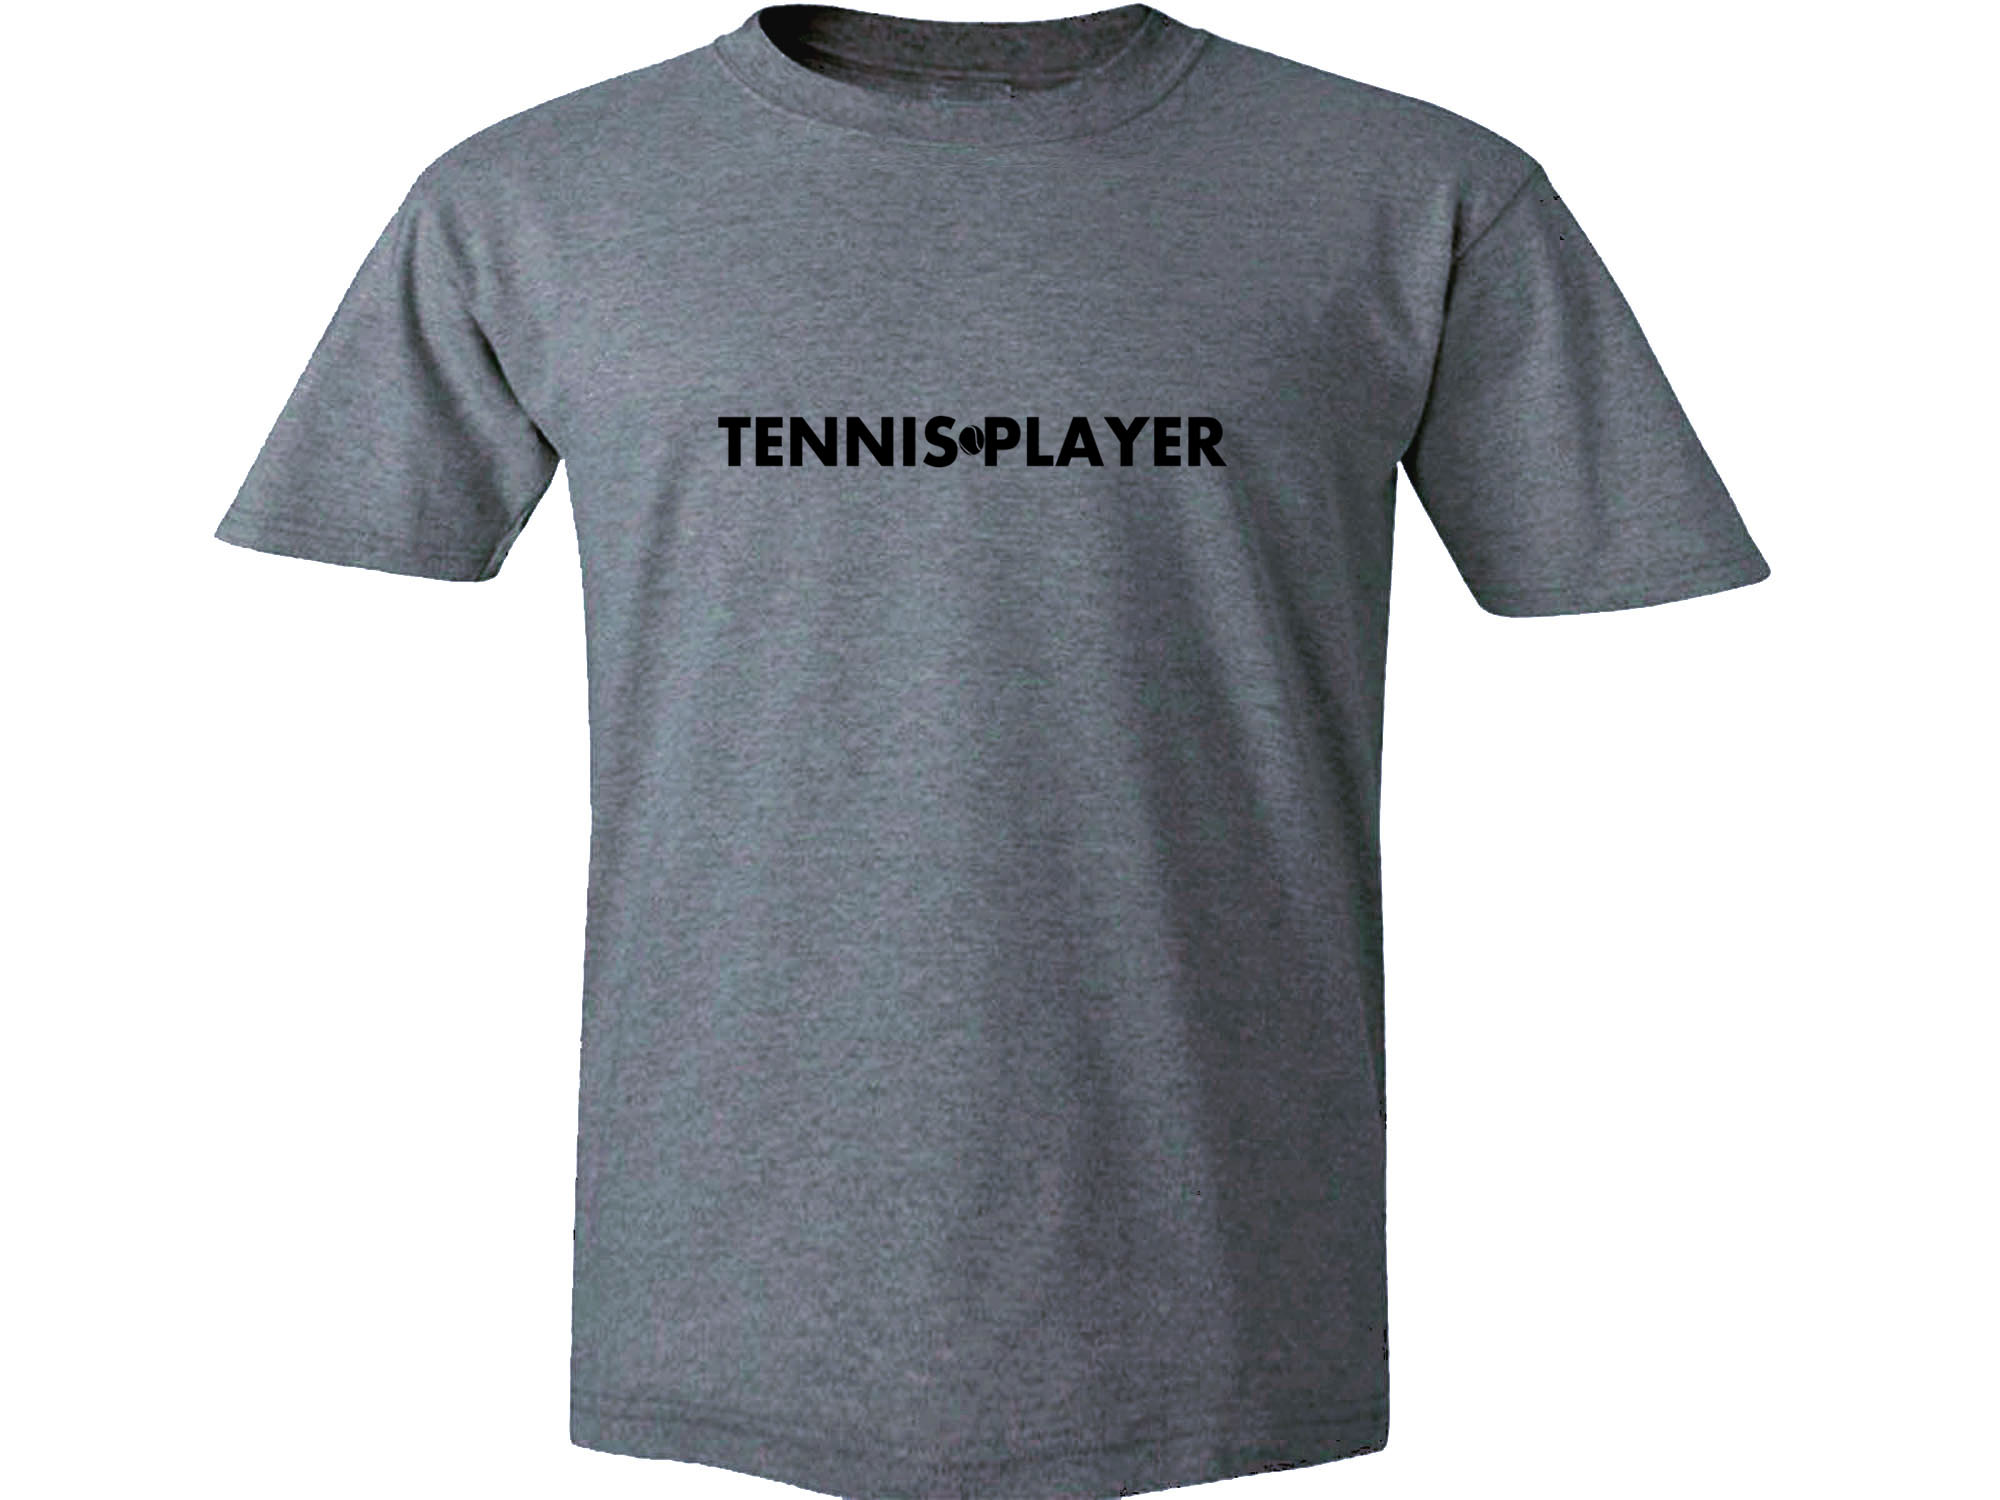 Tennis player 100% cotton t-shirt